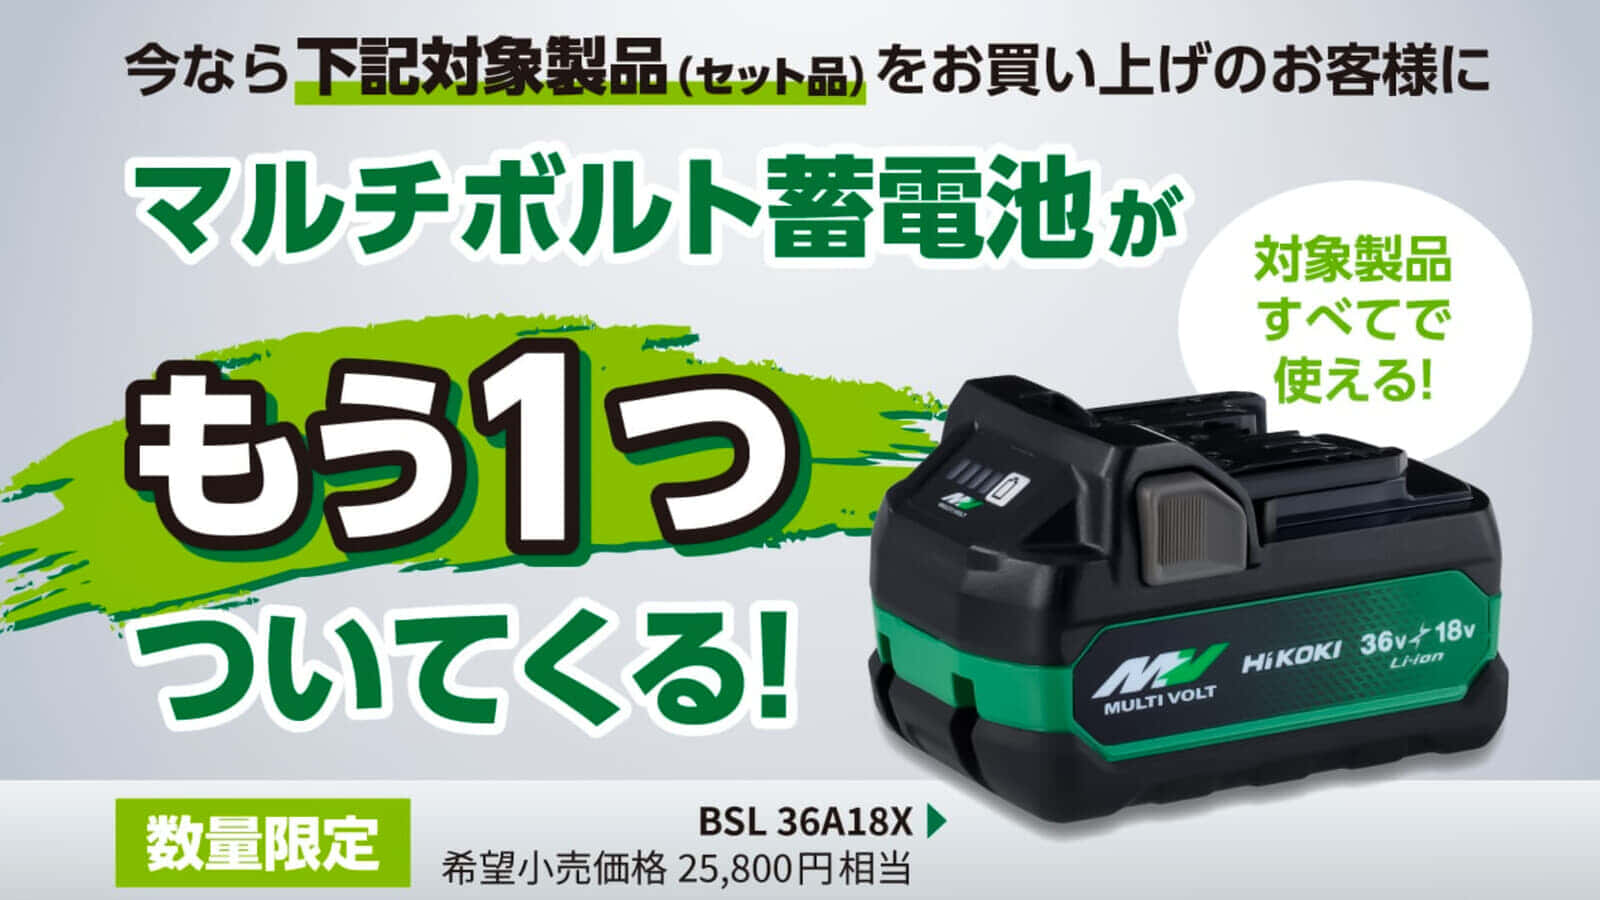 HiKOKI 「マルチボルト蓄電池がもう一つついてくる！」キャンペーンを開始、3/8(金)まで